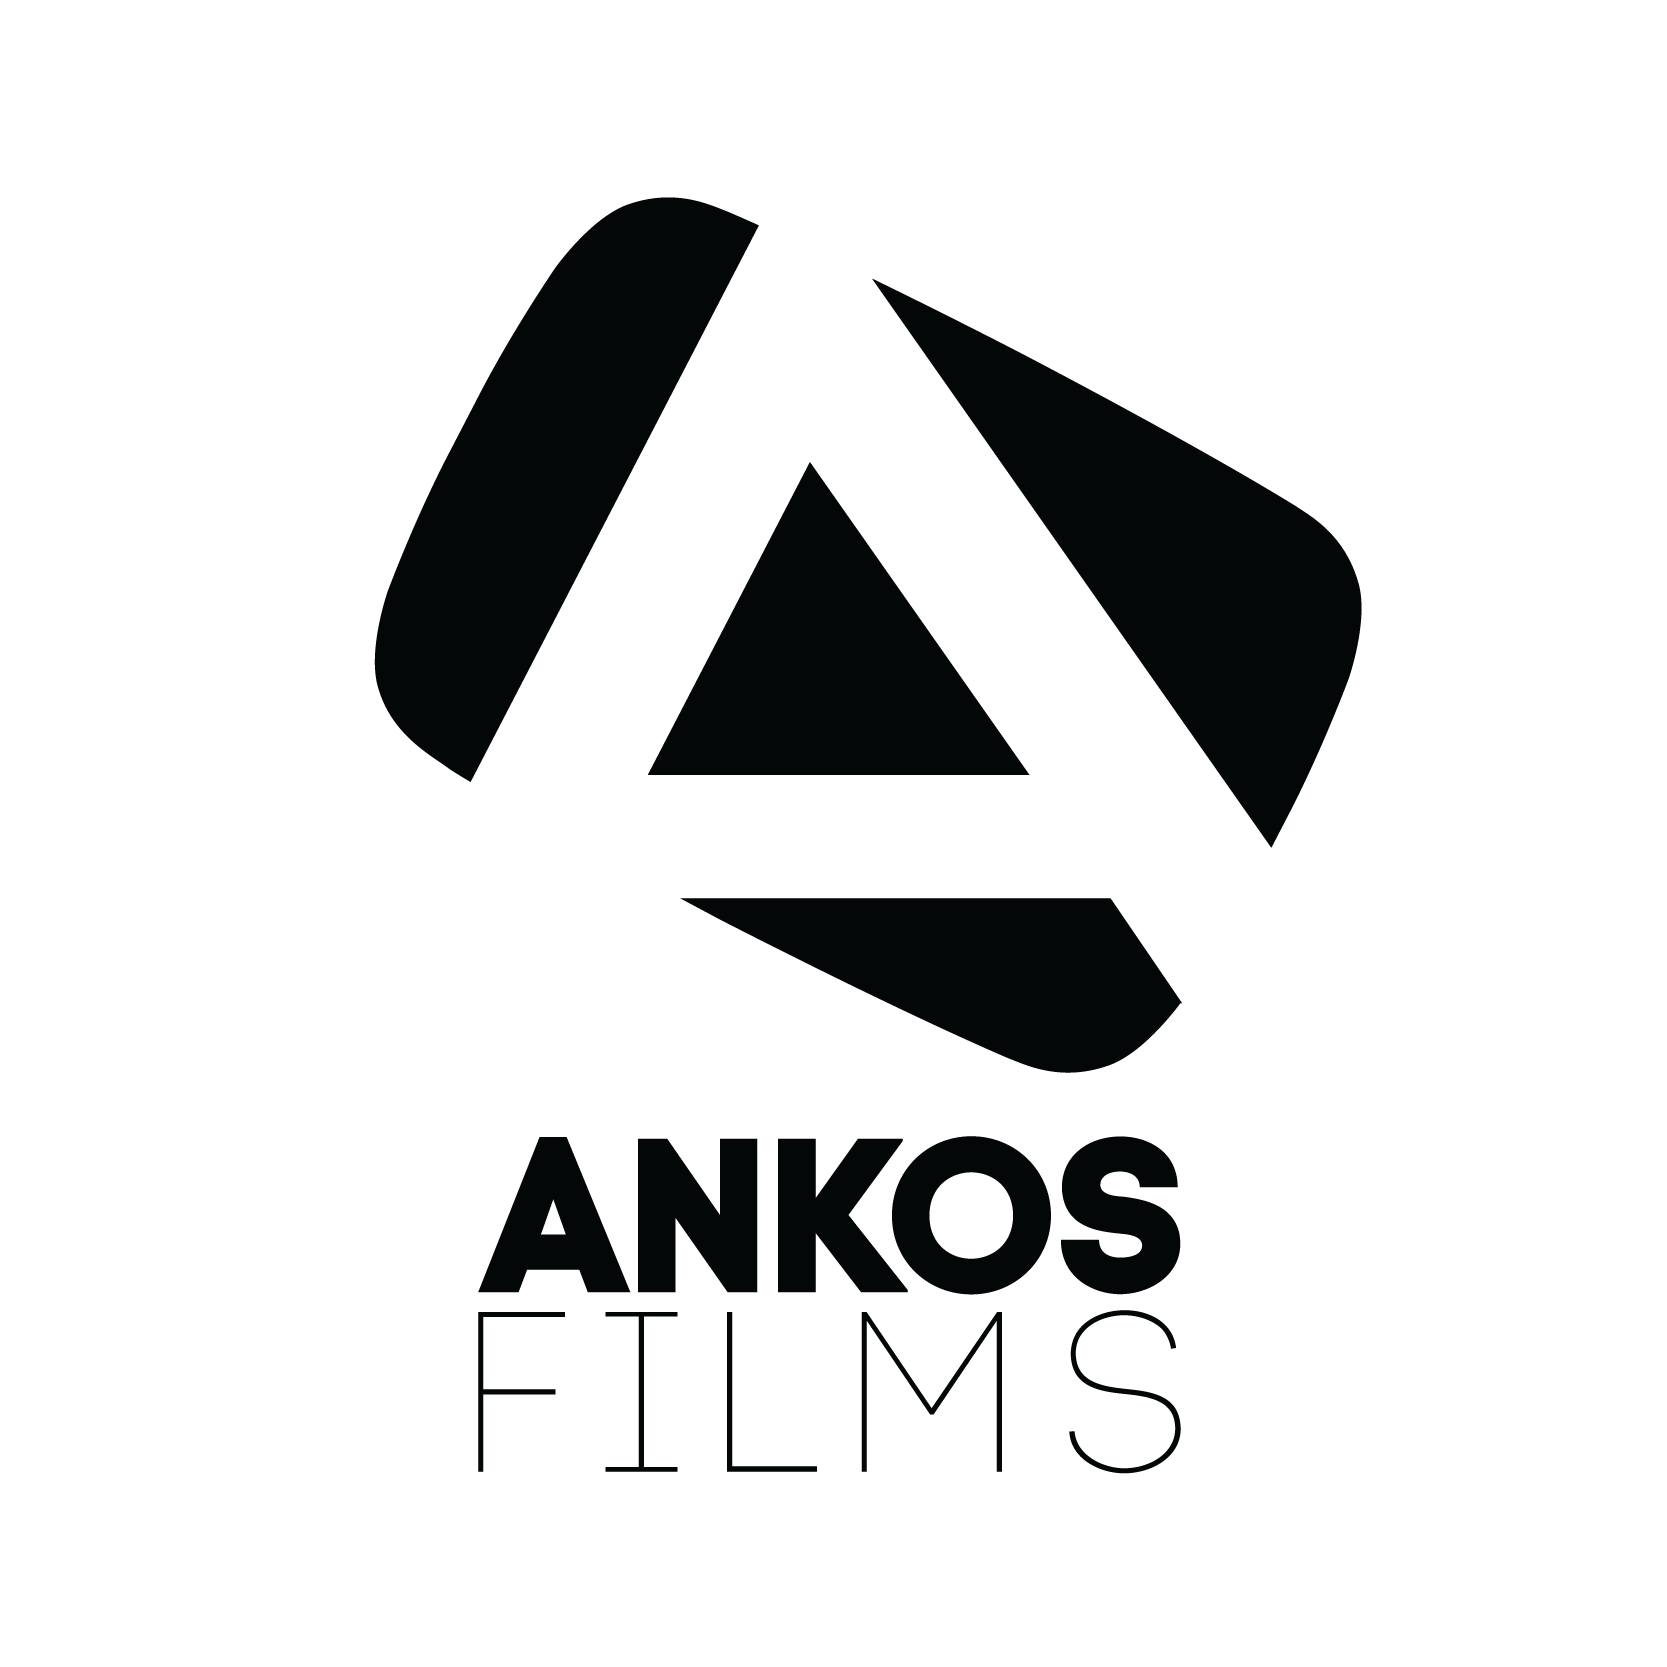 Films Logo - Ankos Films Logo | Zerflin